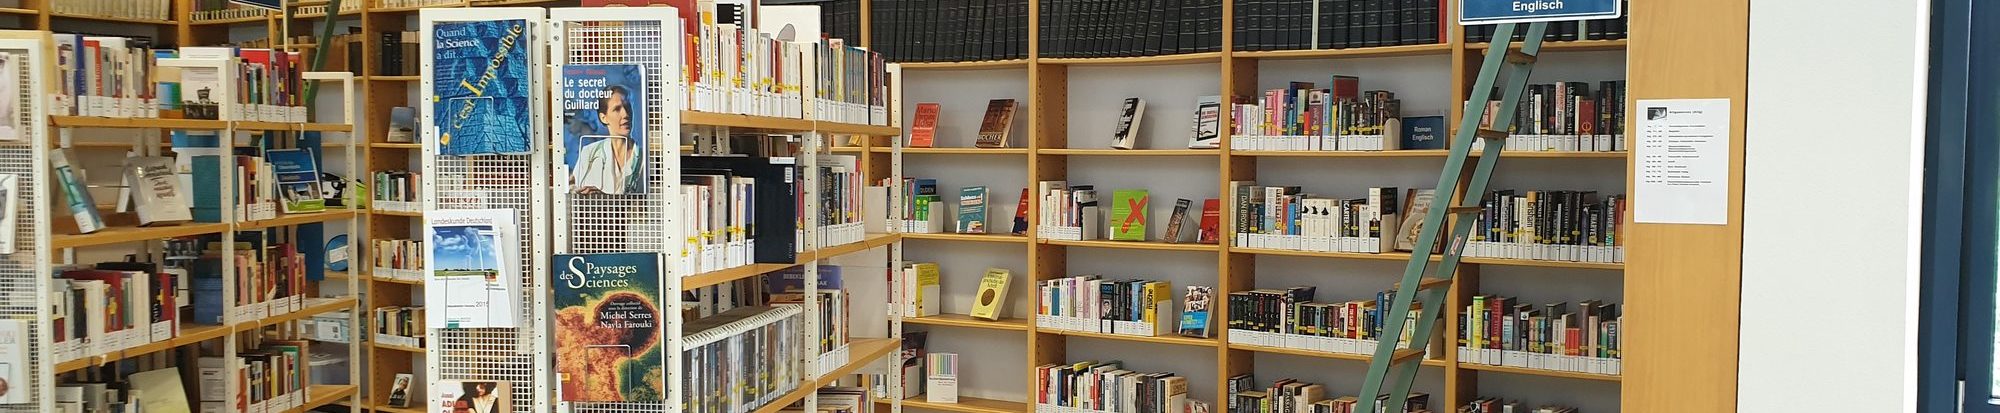 Belletristik der Stadtbibliothek in Lebenstedt